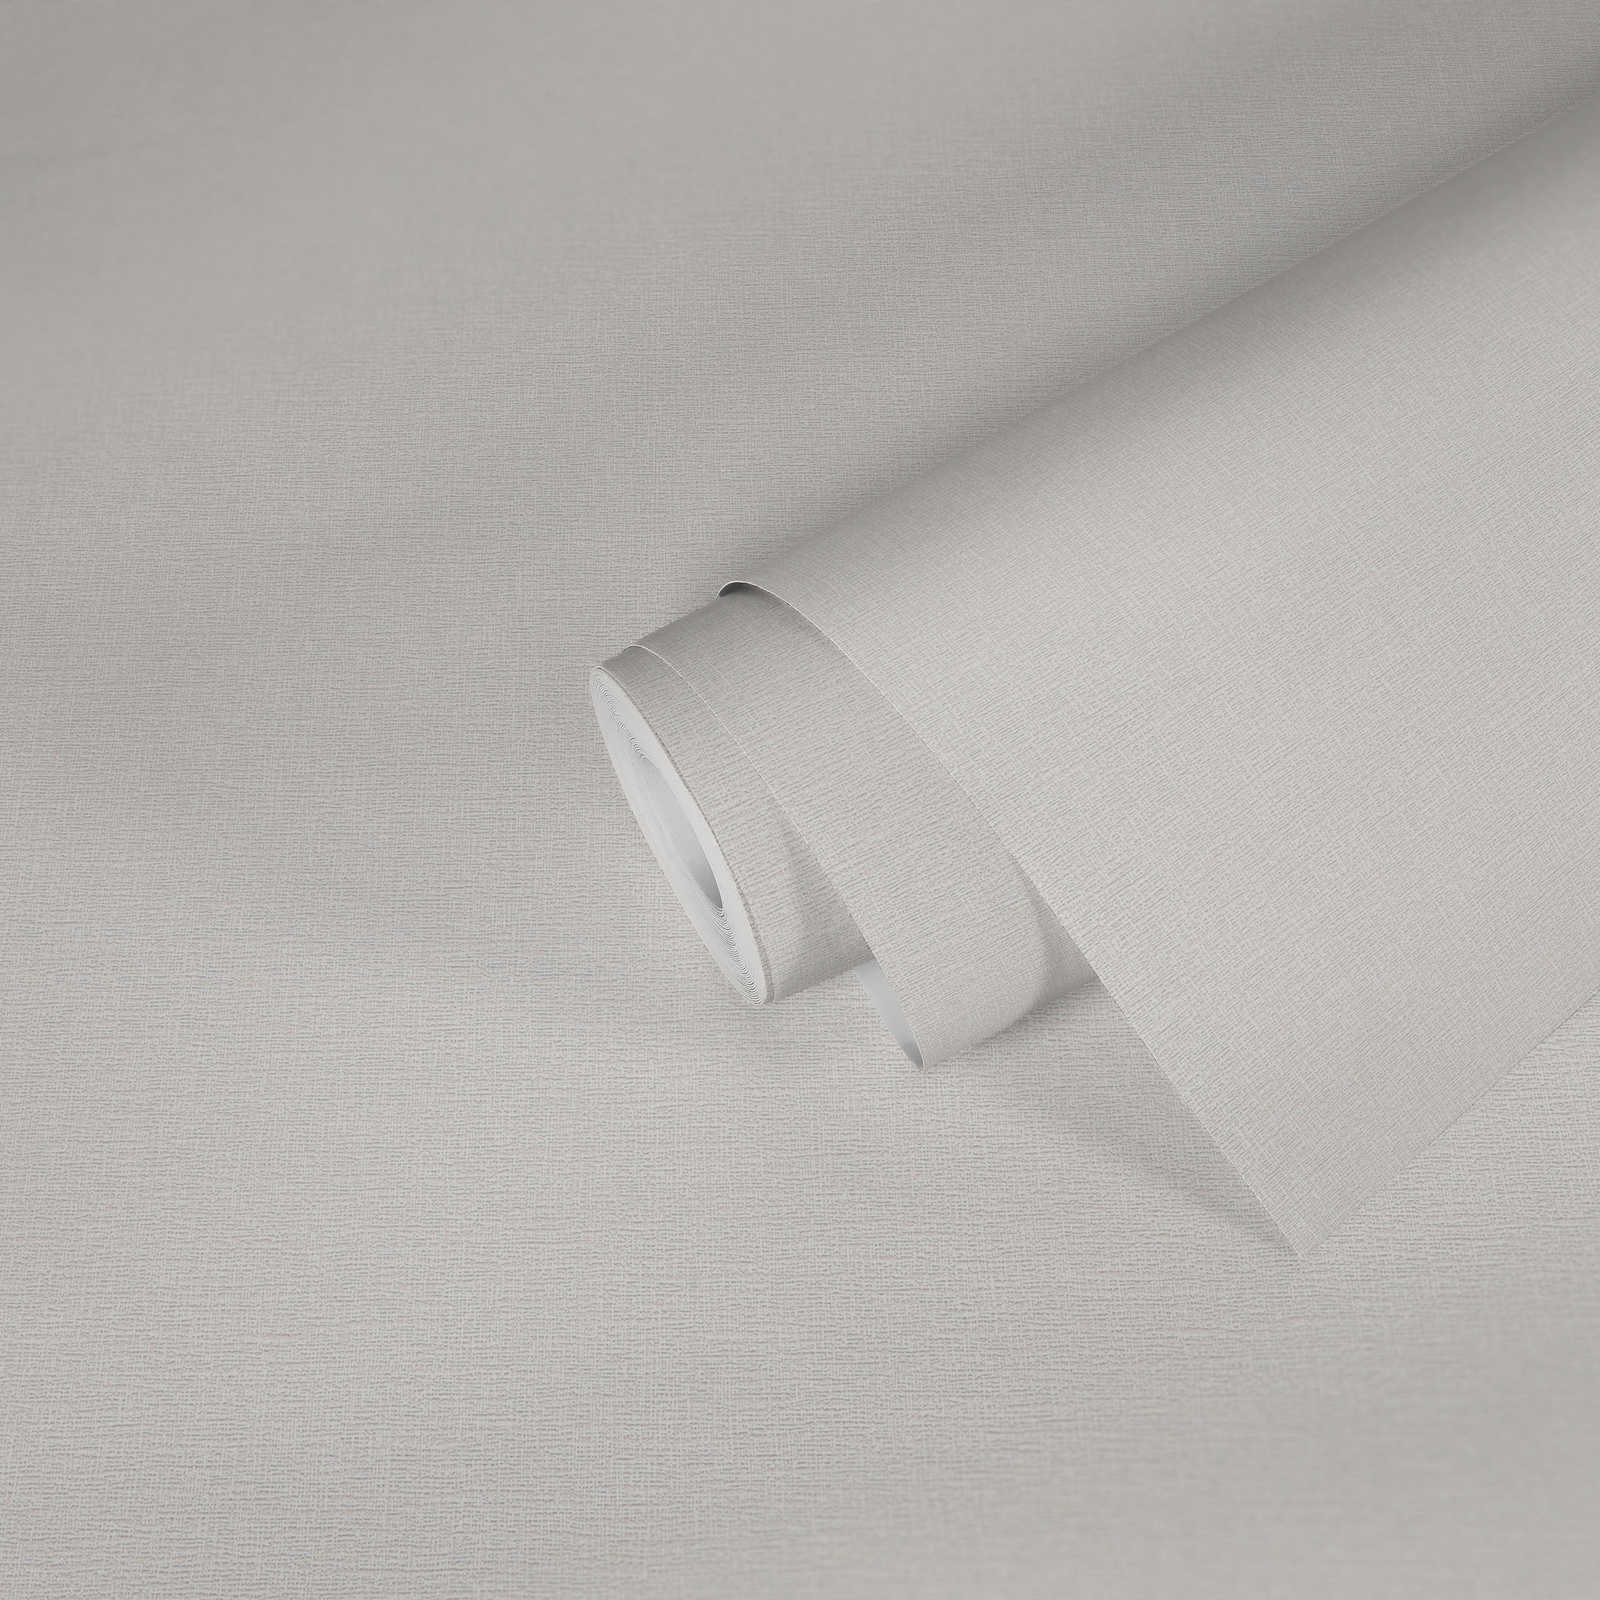             Papier peint crème uni avec structure naturelle
        